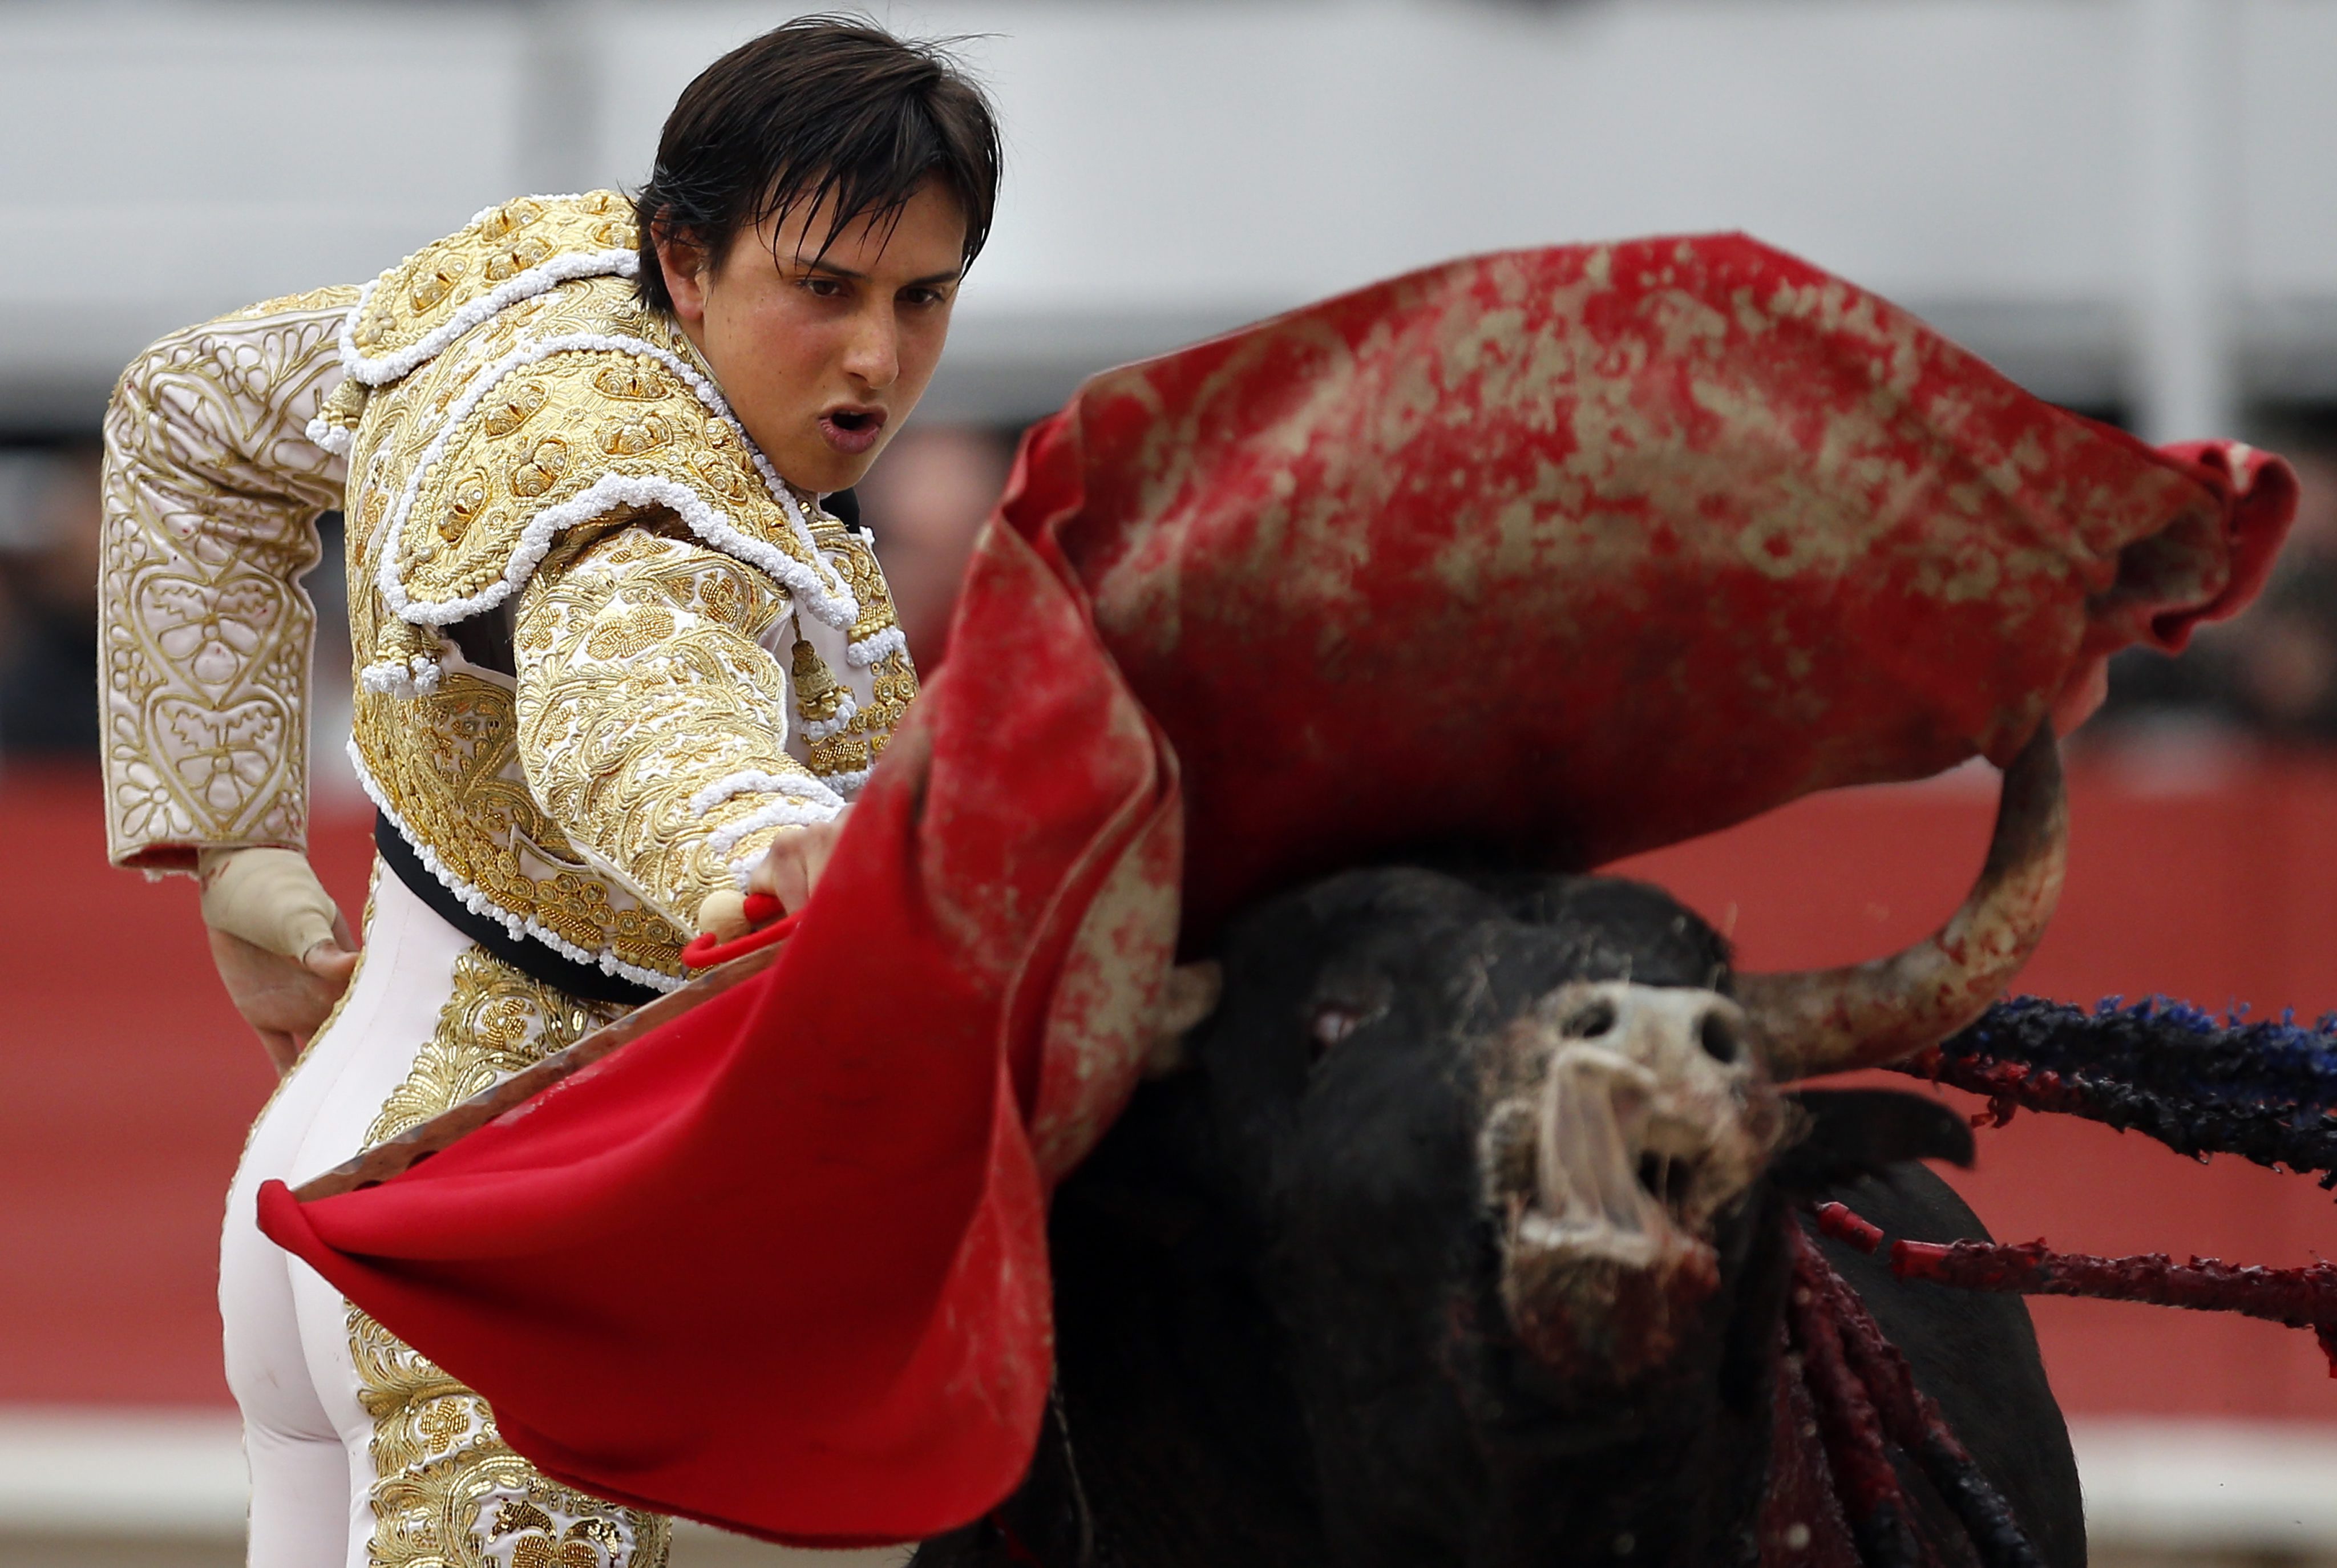 Felöklelte a bika a matadort - Fotók! - Blikk